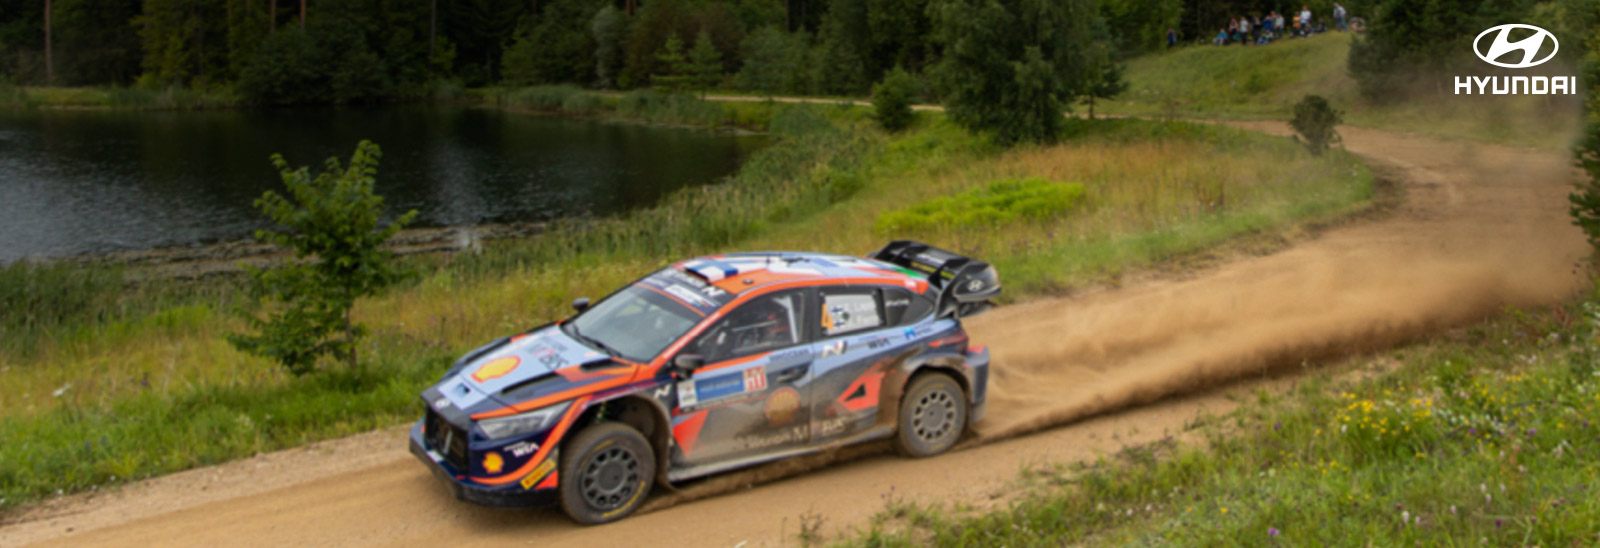 Hyundai i20 N en camino de tierra dunrate el Rally de Estonia